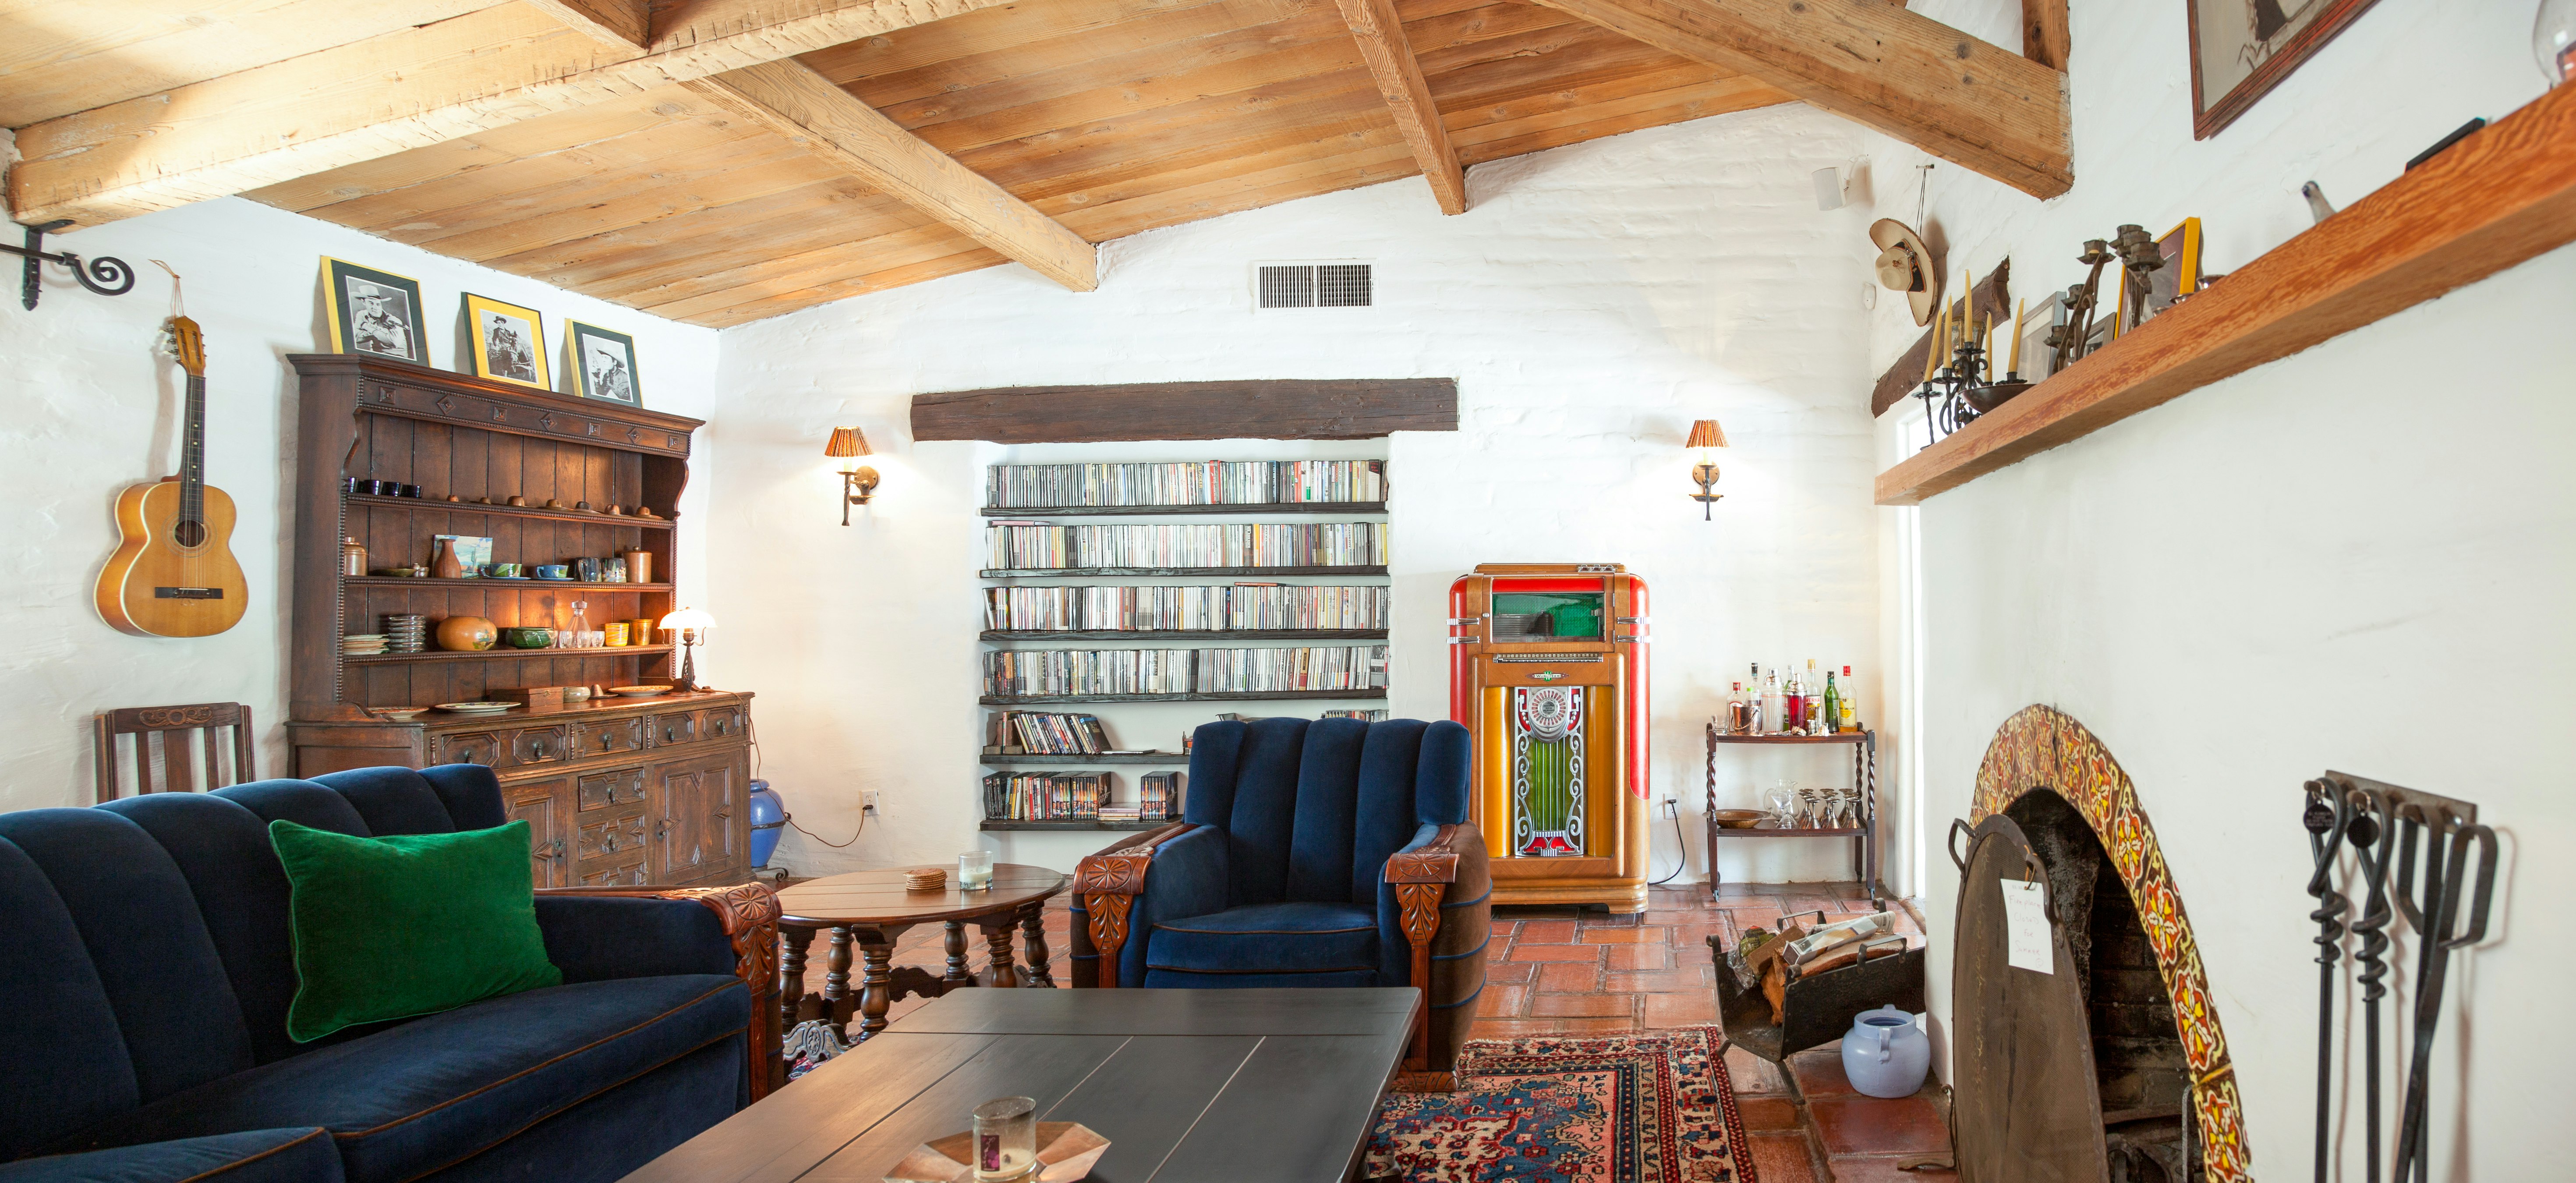 Bing Crosby Palm Springs estate living room.jpg